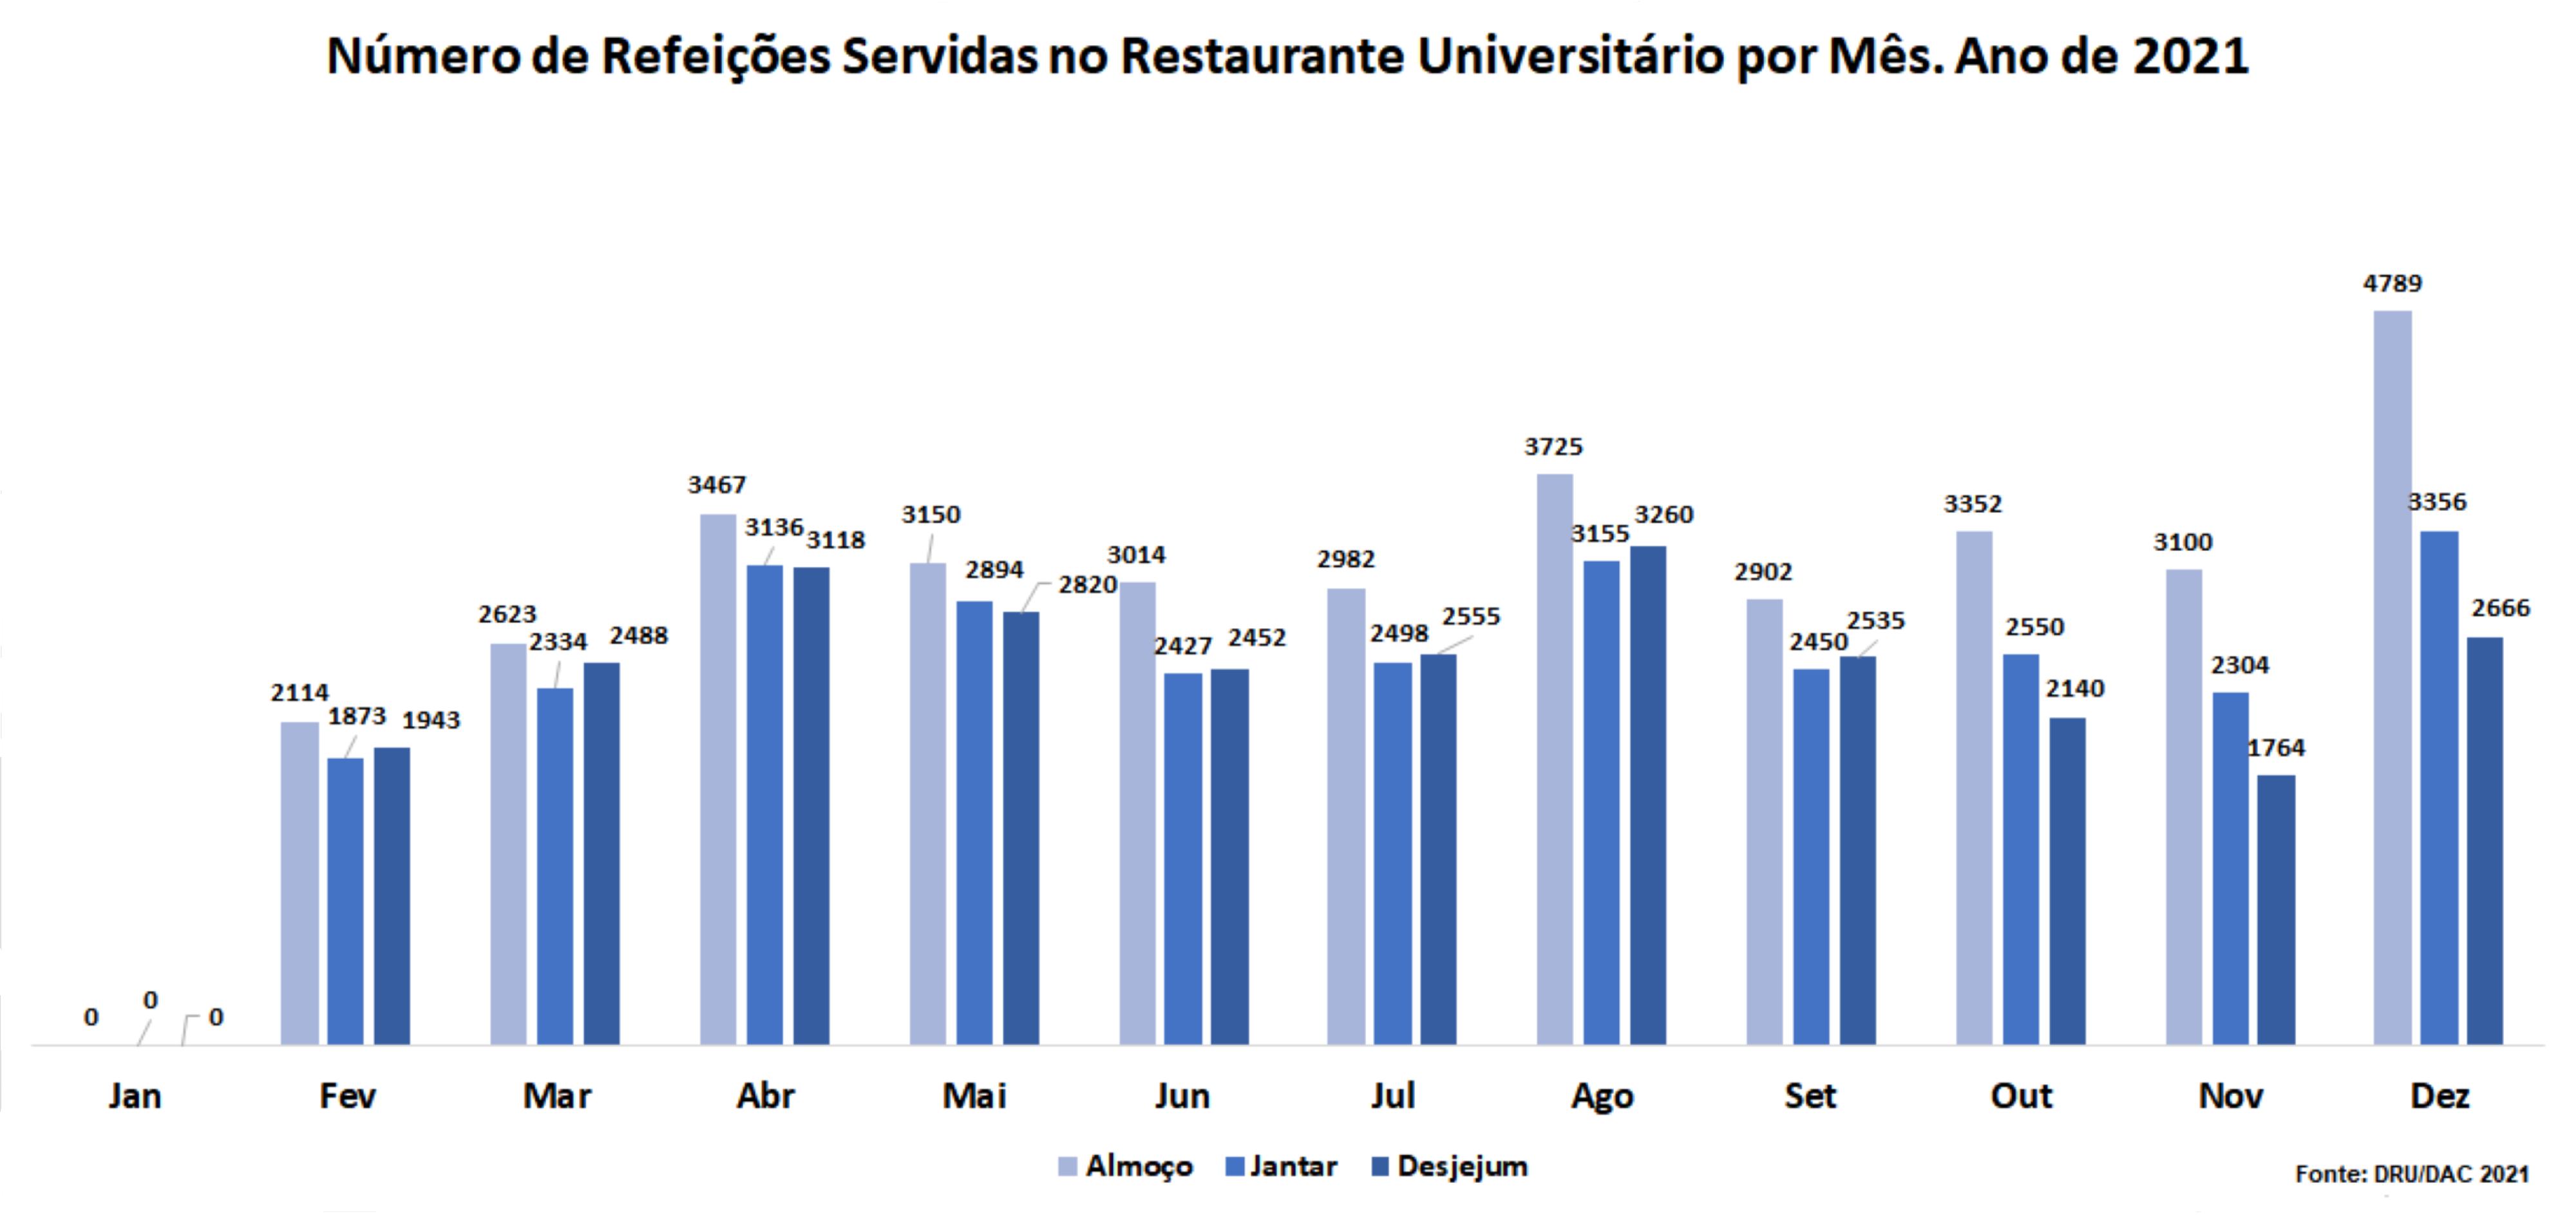 Número de Refeições Servidas no Restaurante Universitário por Mês, Jan.-Dez. 2021